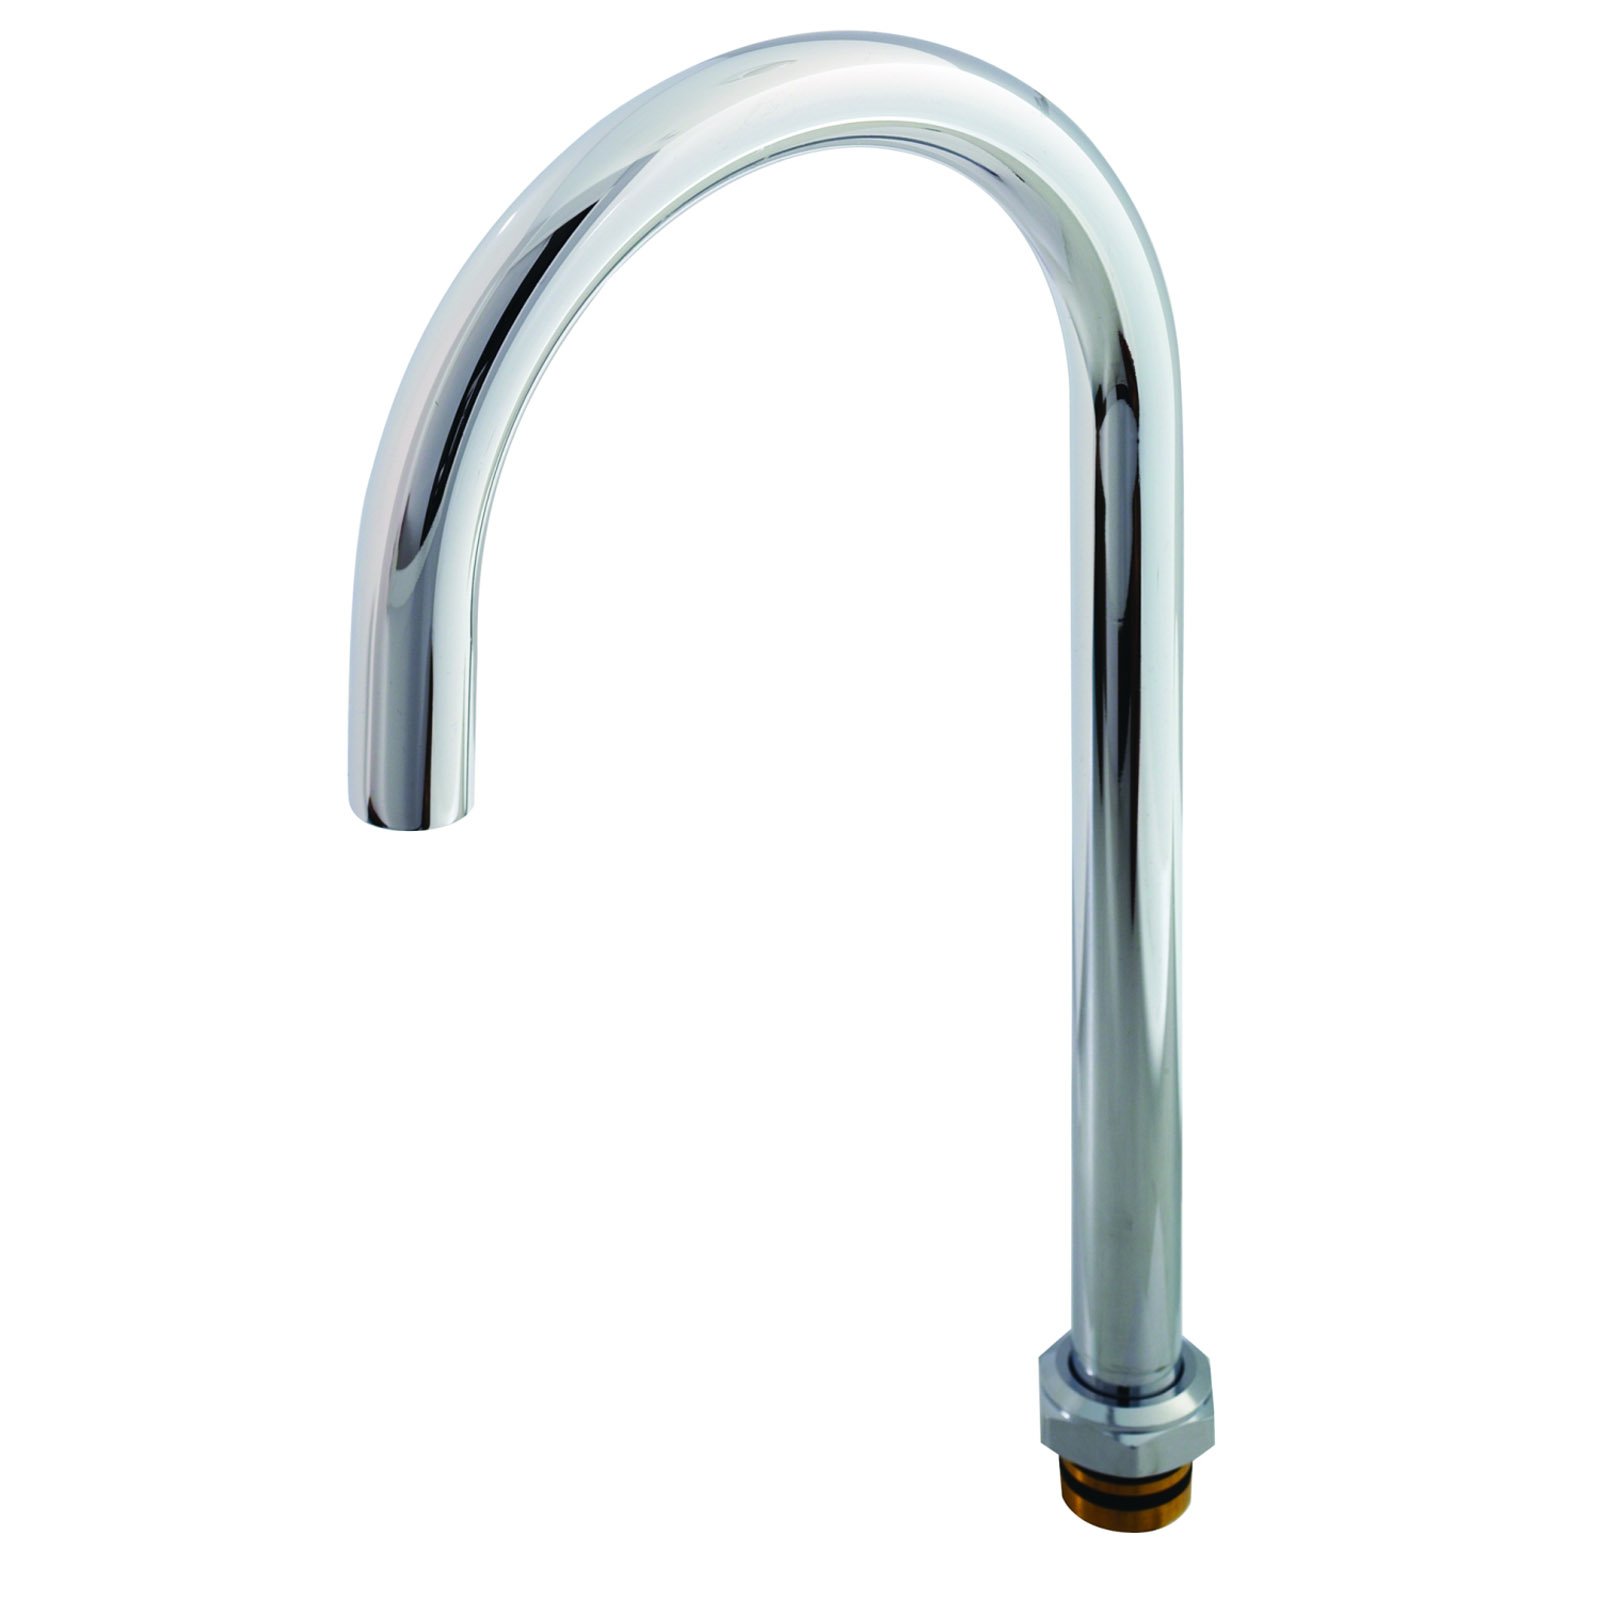 T&S Brass BF-0135-X Spout / Nozzle Faucet